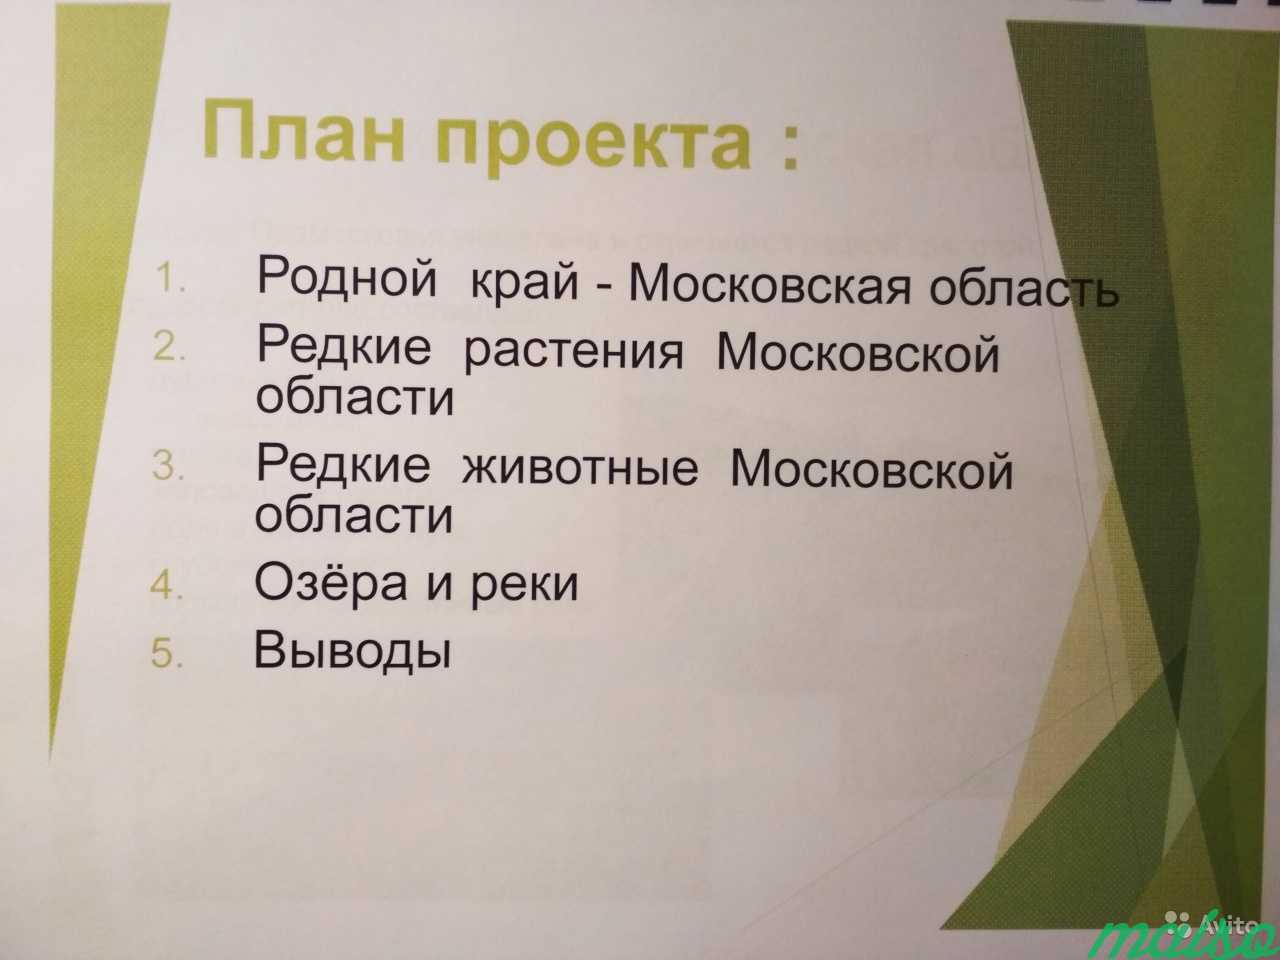 Презентациии и проекты школьникам 1-8 класс в Москве. Фото 2